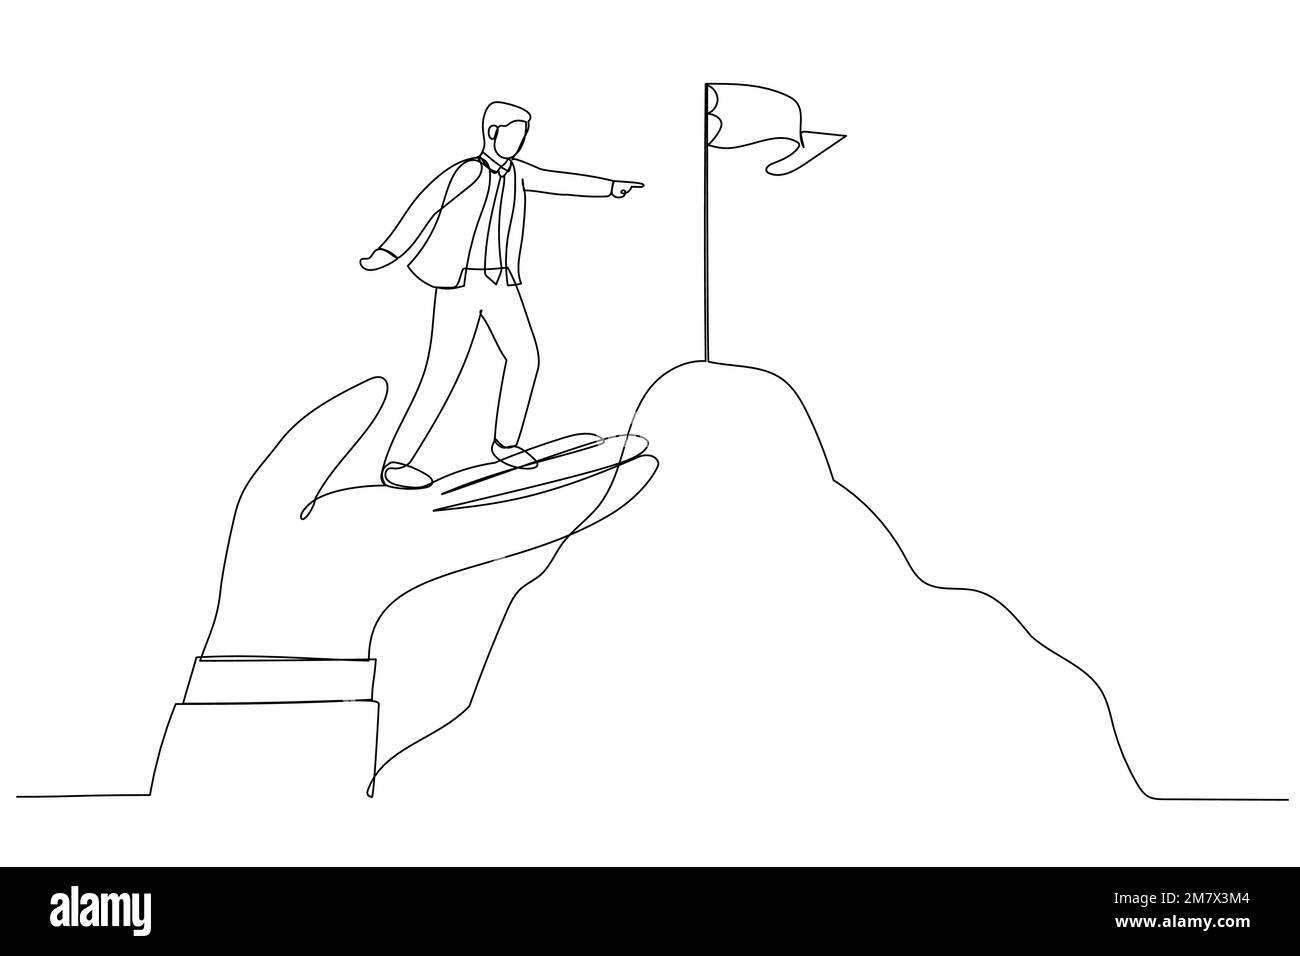 Darstellung eines Geschäftsmanns, der auf einer riesigen Hand steht, um die Zielflagge des Berggipfels zu erreichen. Metapher für Coaching. Ein kontinuierlicher Strichbildstil Stock Vektor